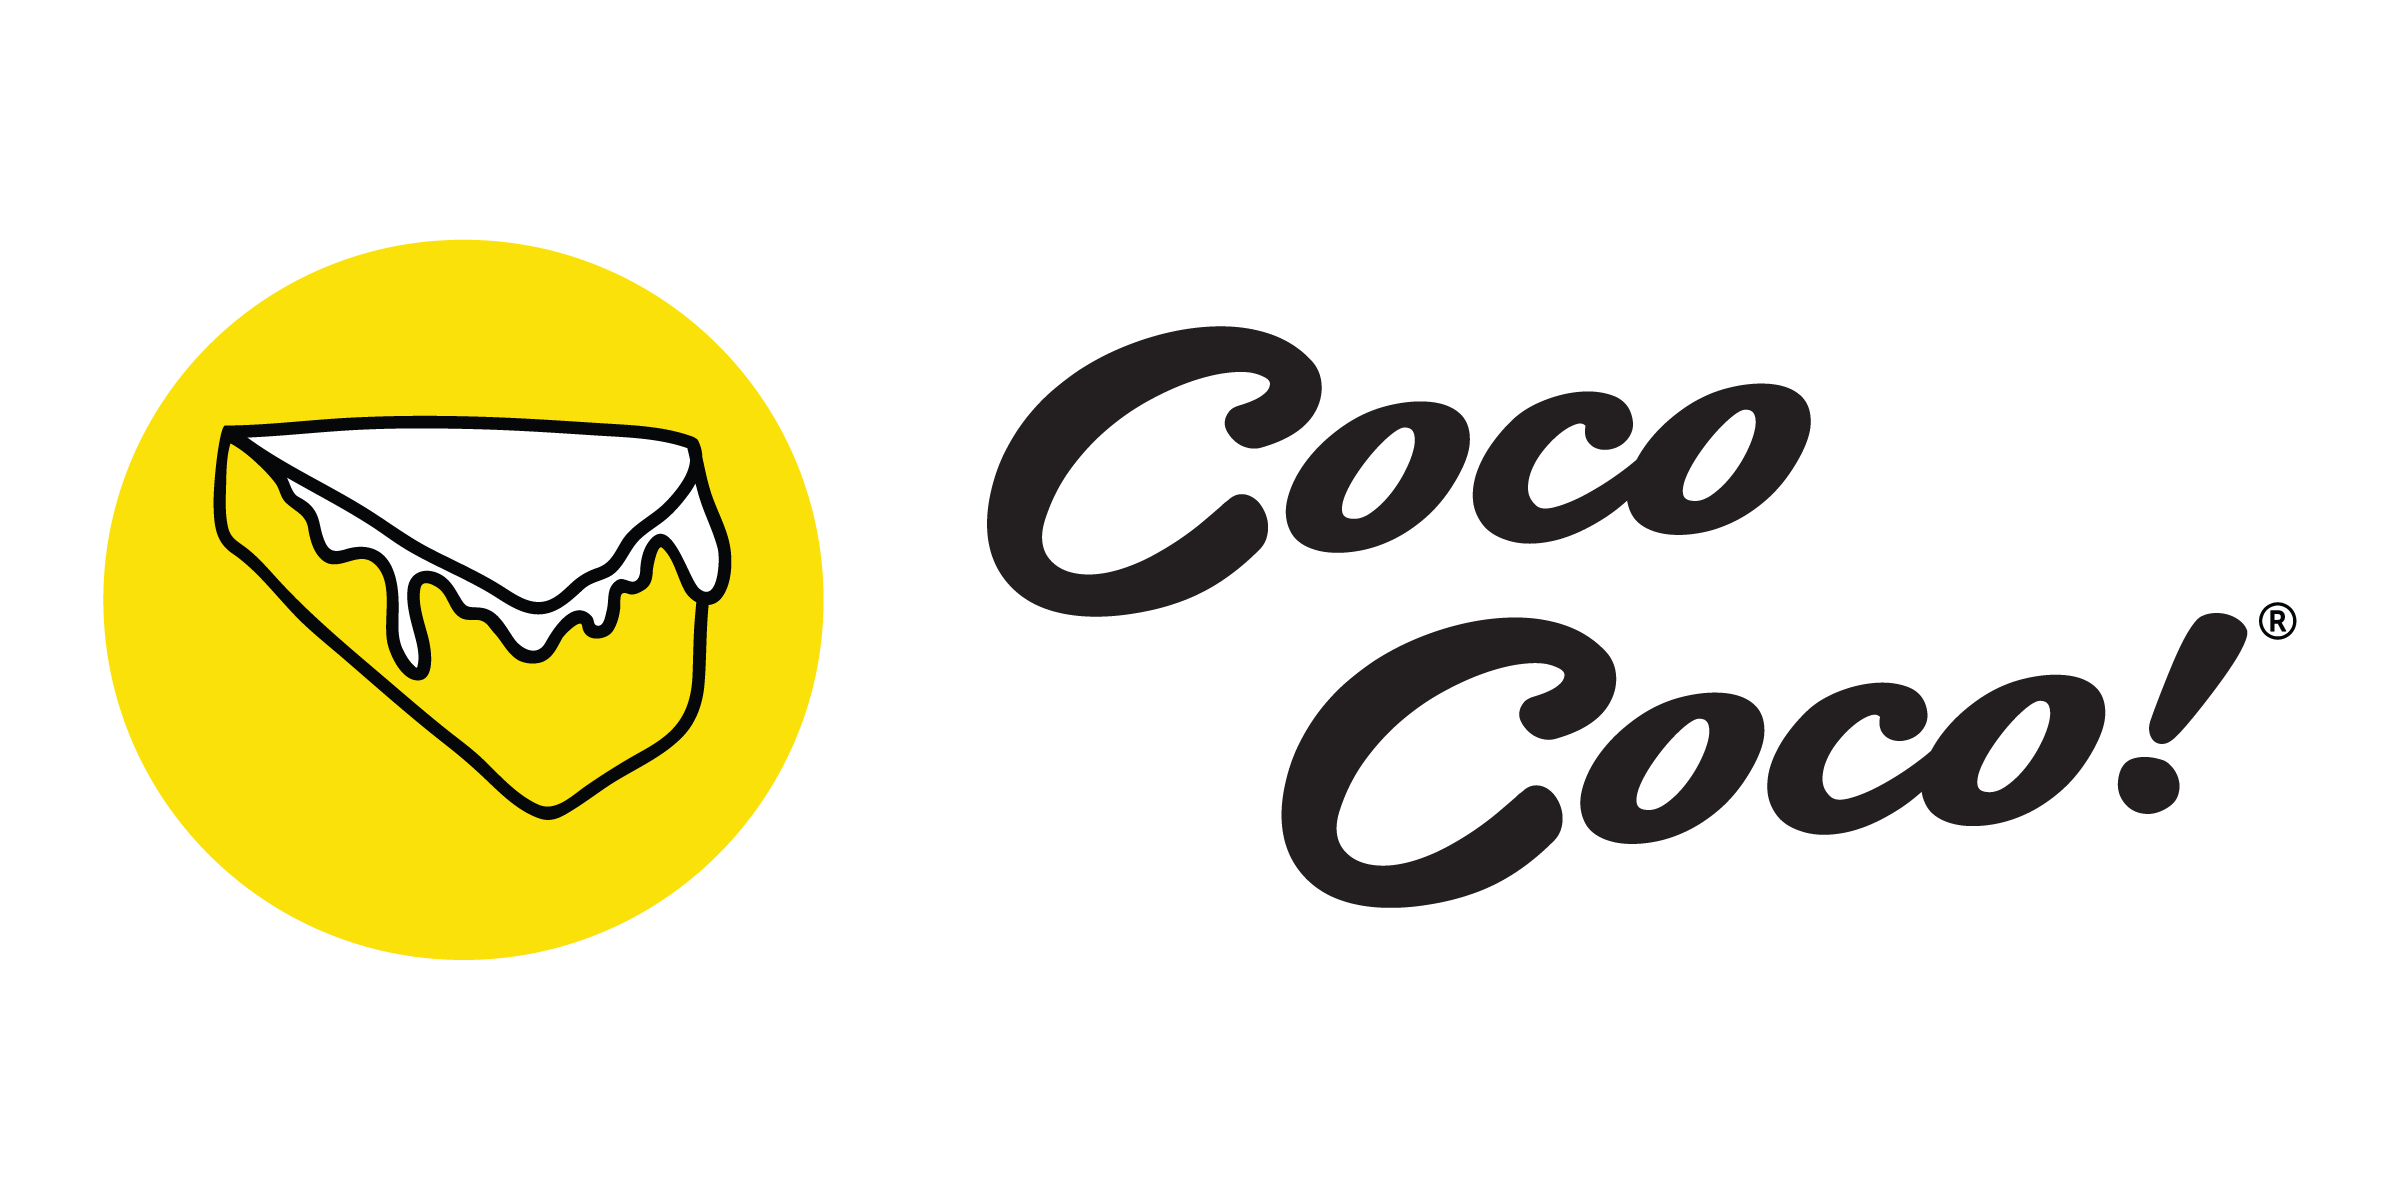 Coco Coco!